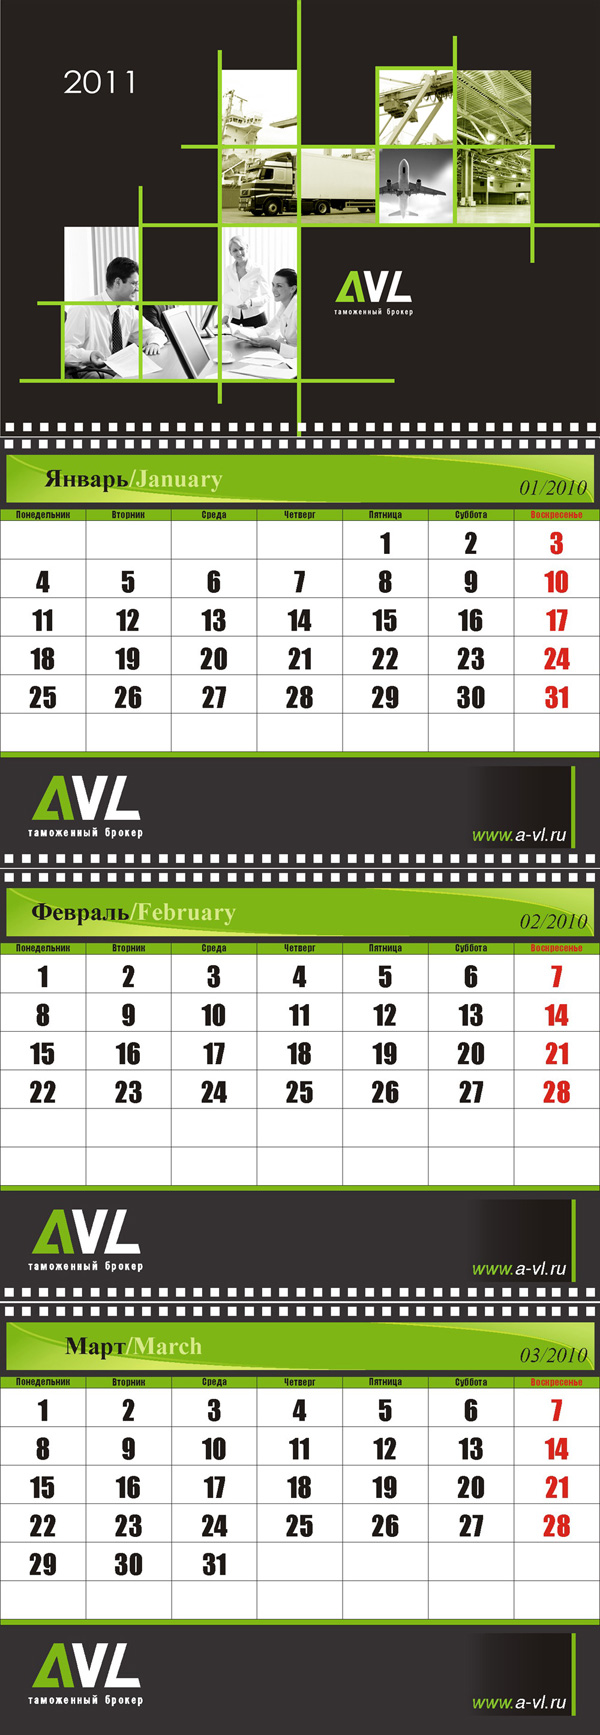 Настенный календарь AVL